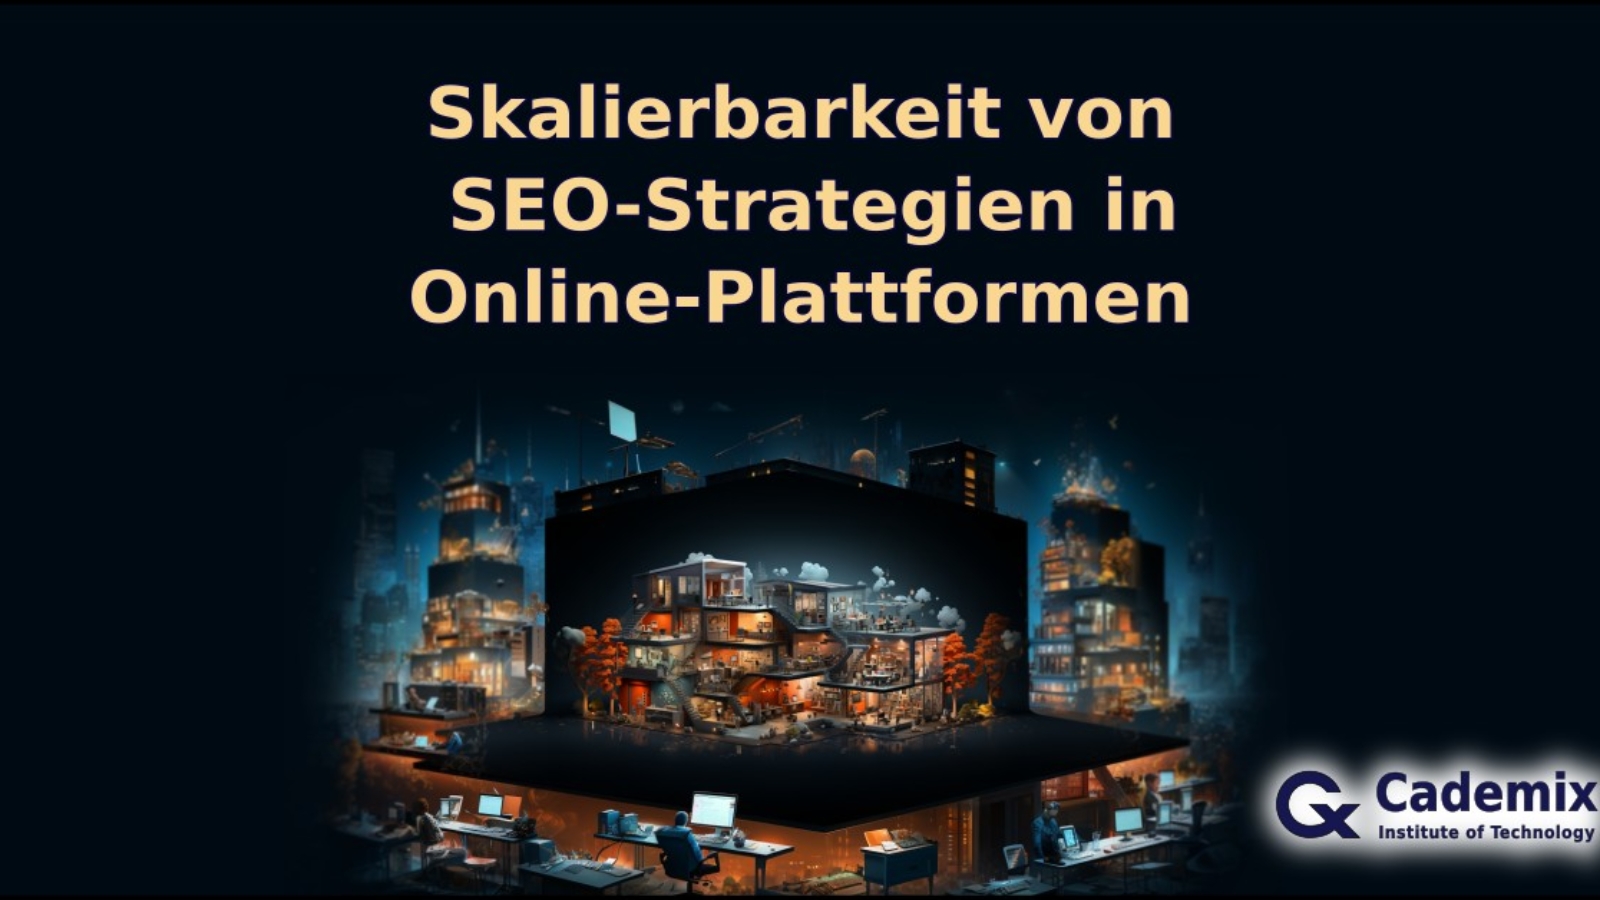 Skalierbarkeit von SEO-Strategien in Online-Plattformens